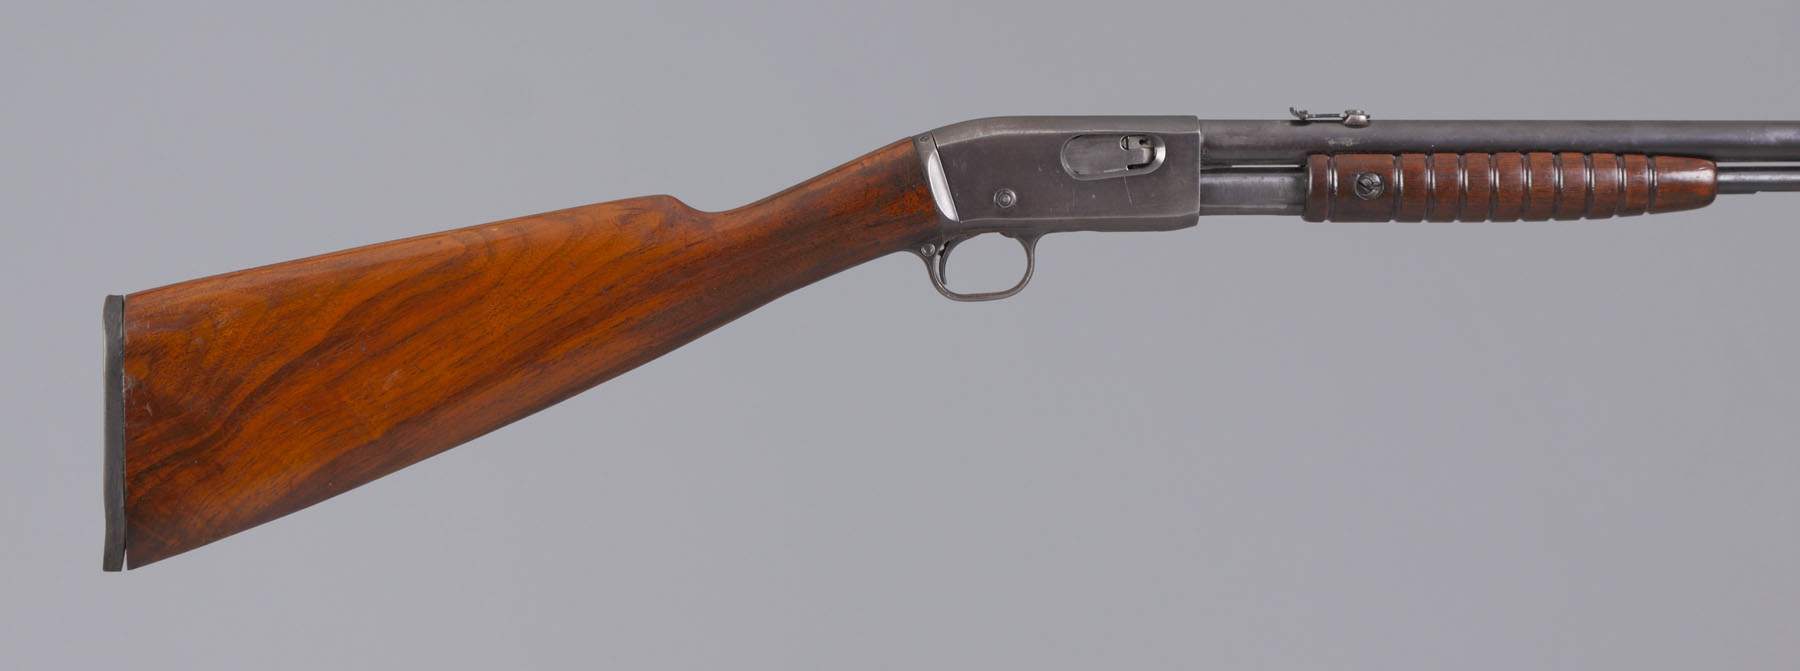 remington model 12 serial number 670675